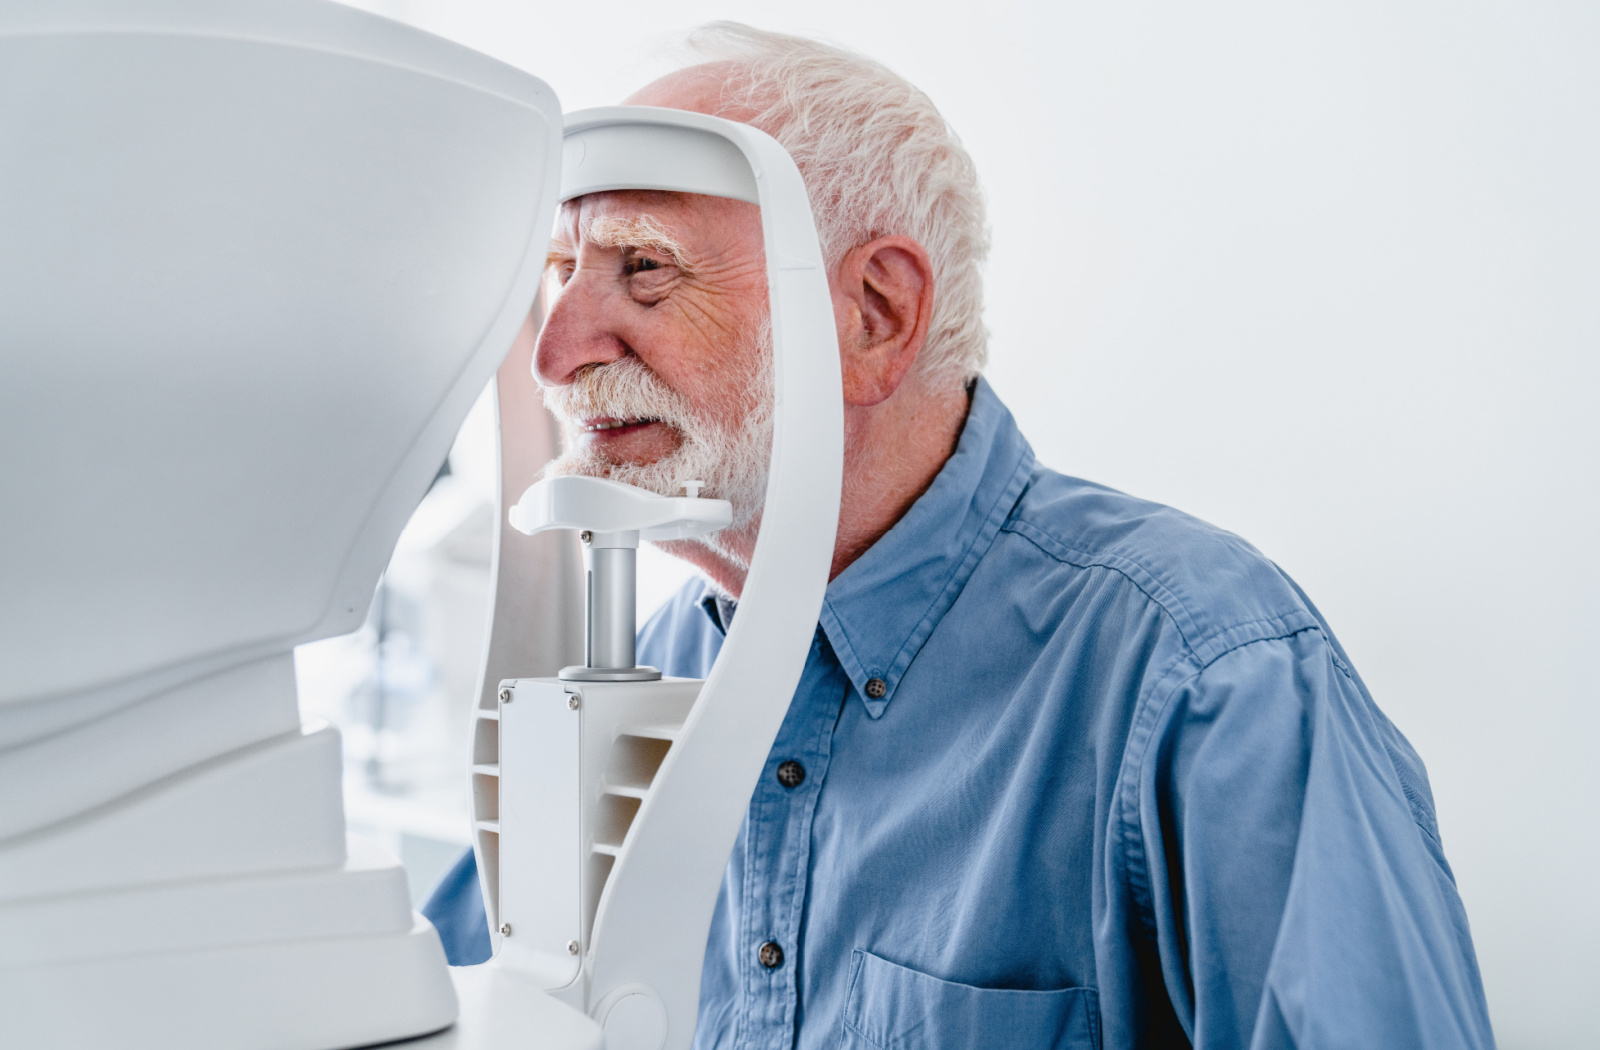 Mature men being examined at a retinal camera.